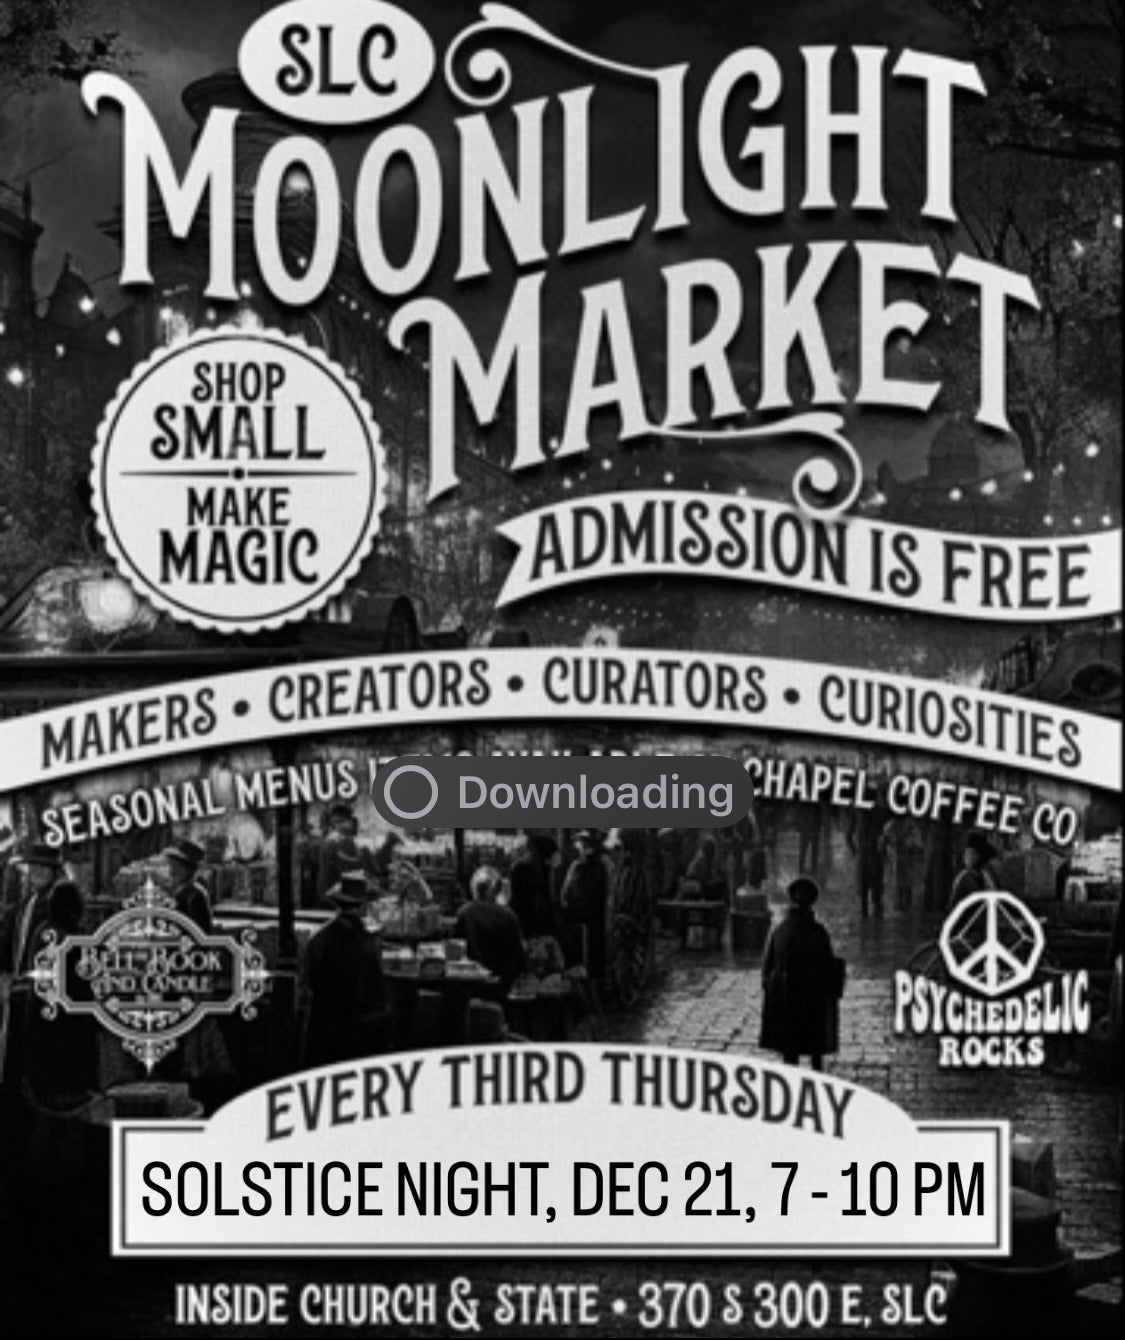 December Moonlight Market Booth